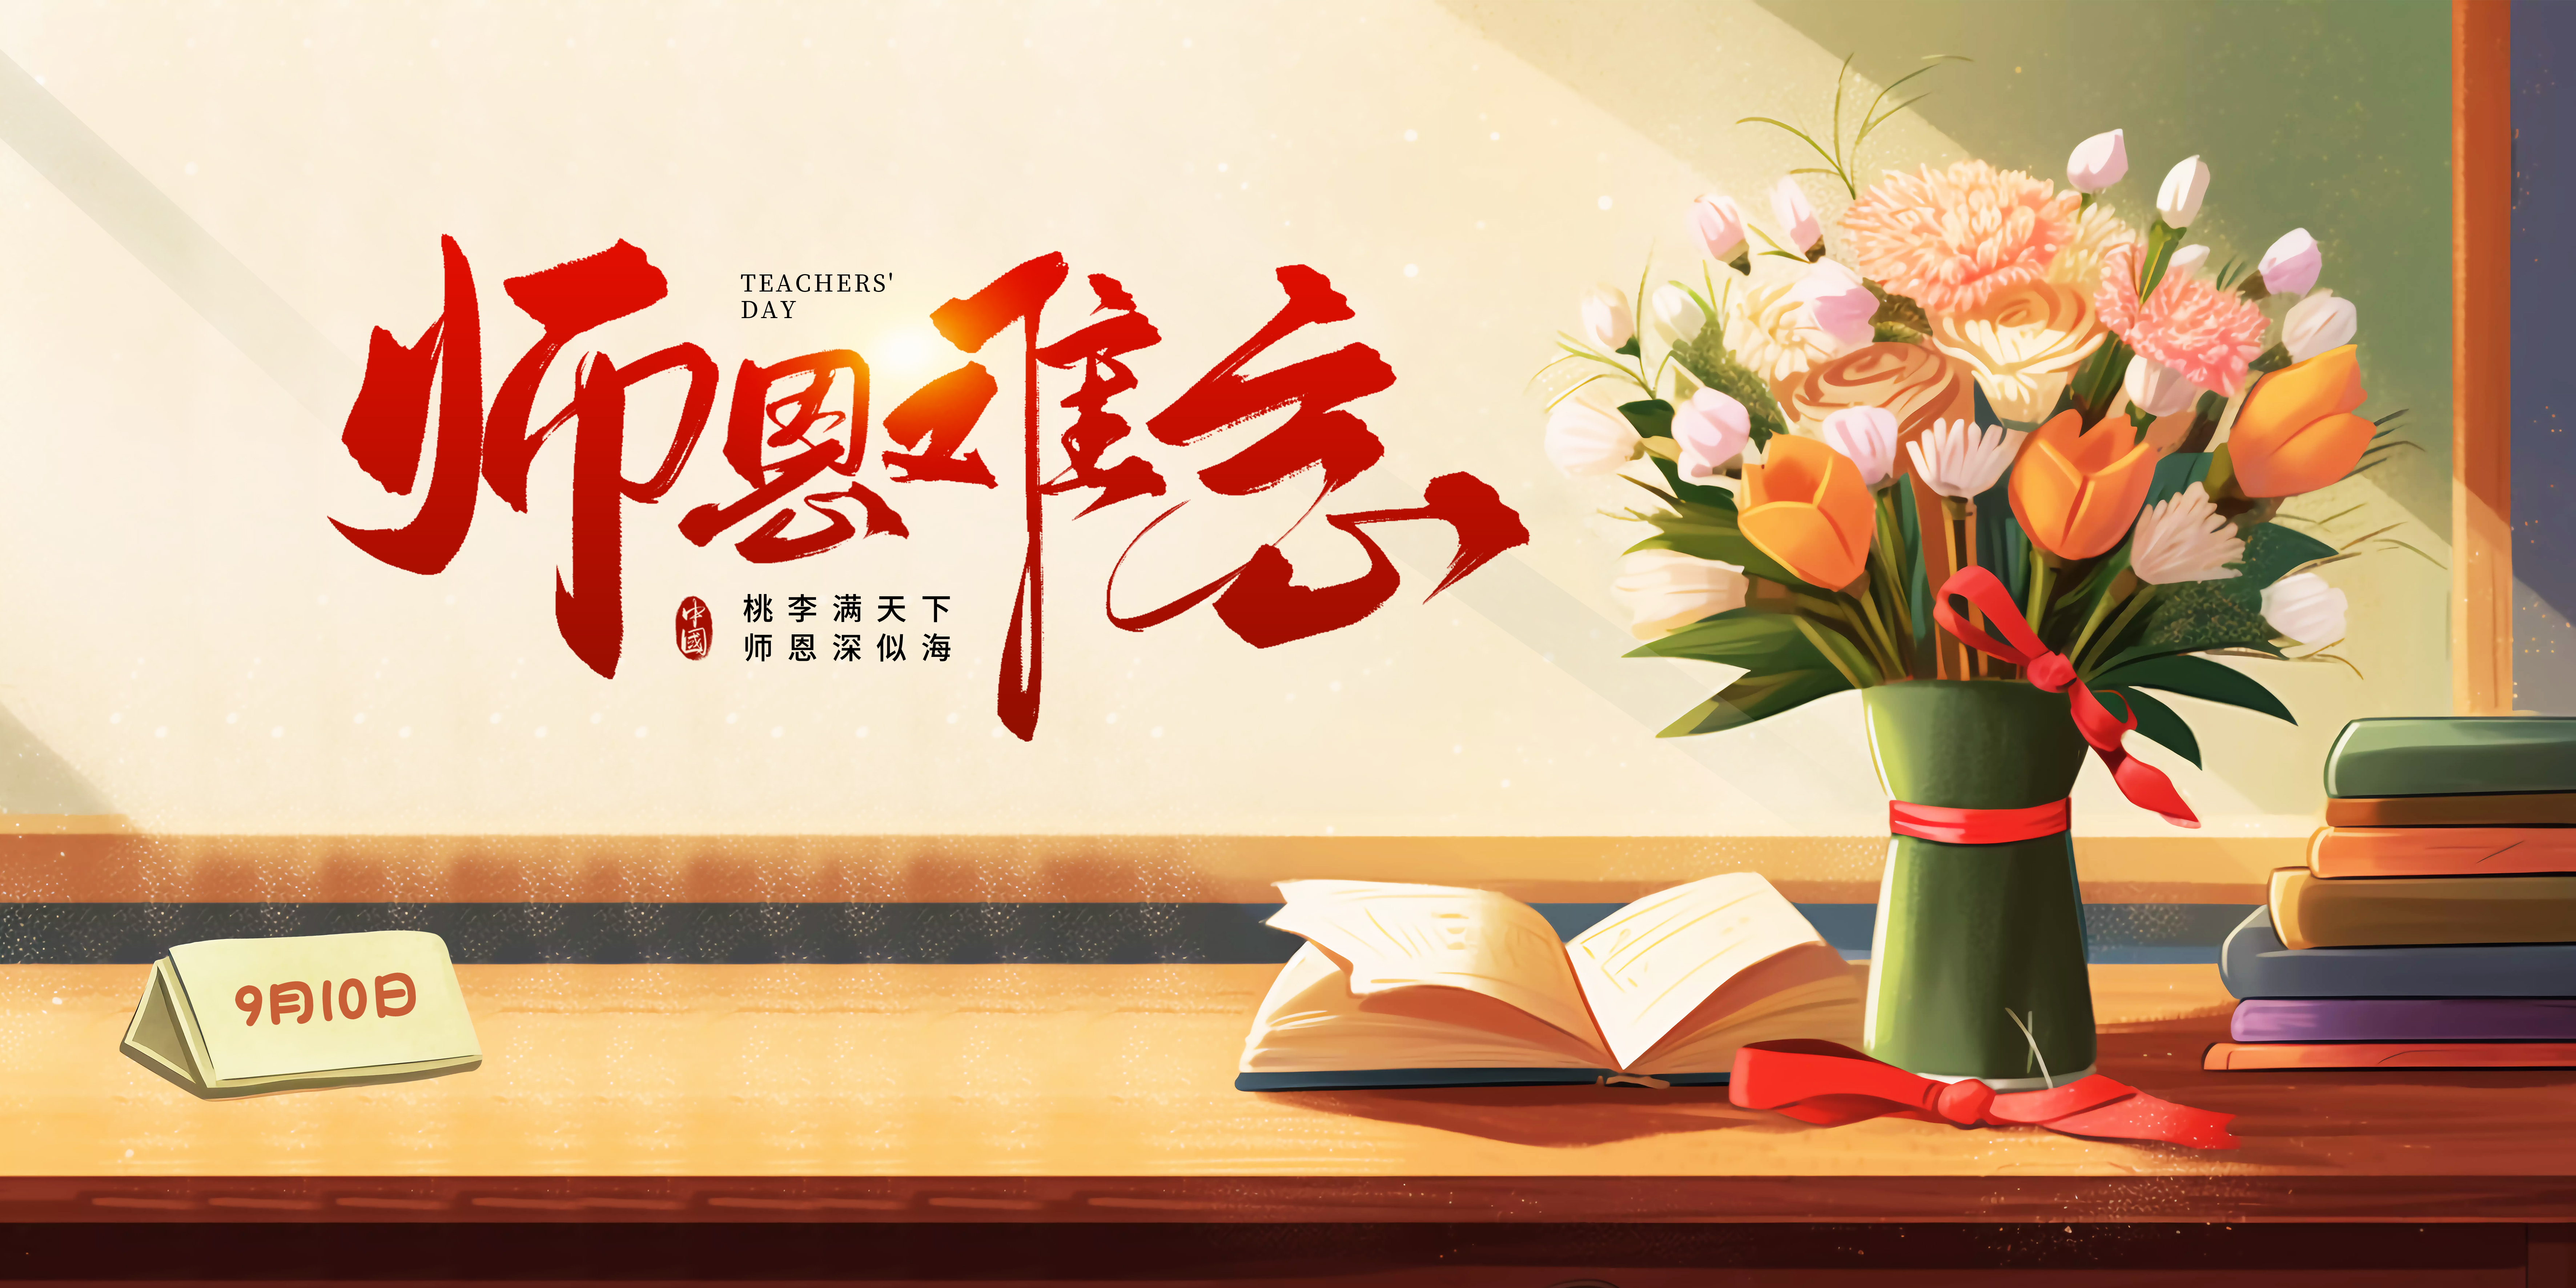 精英华唐艺术高中祝所有的老师教师节快乐！